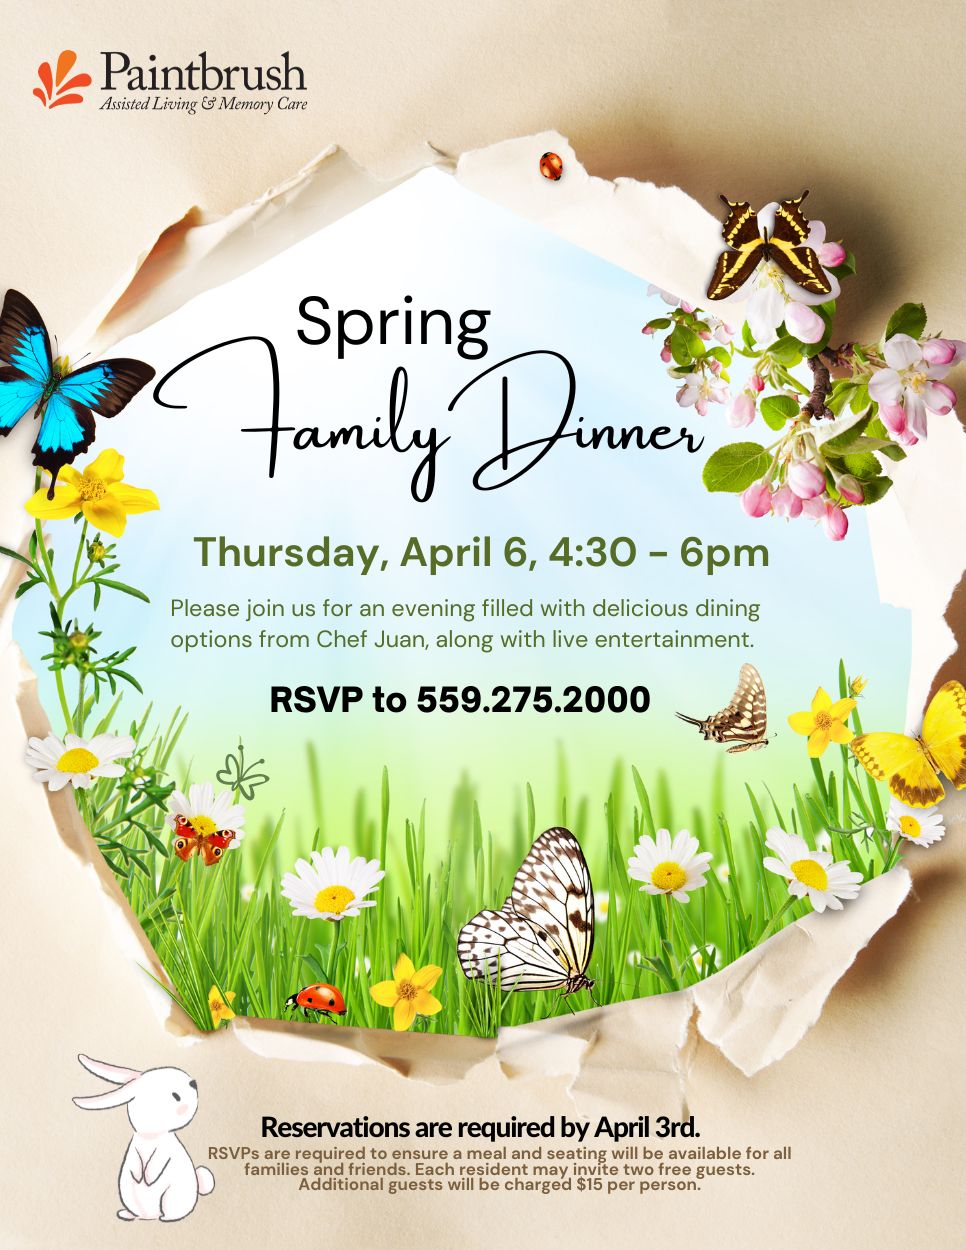 Paintbrush Spring Family & Friends Dinner April 6